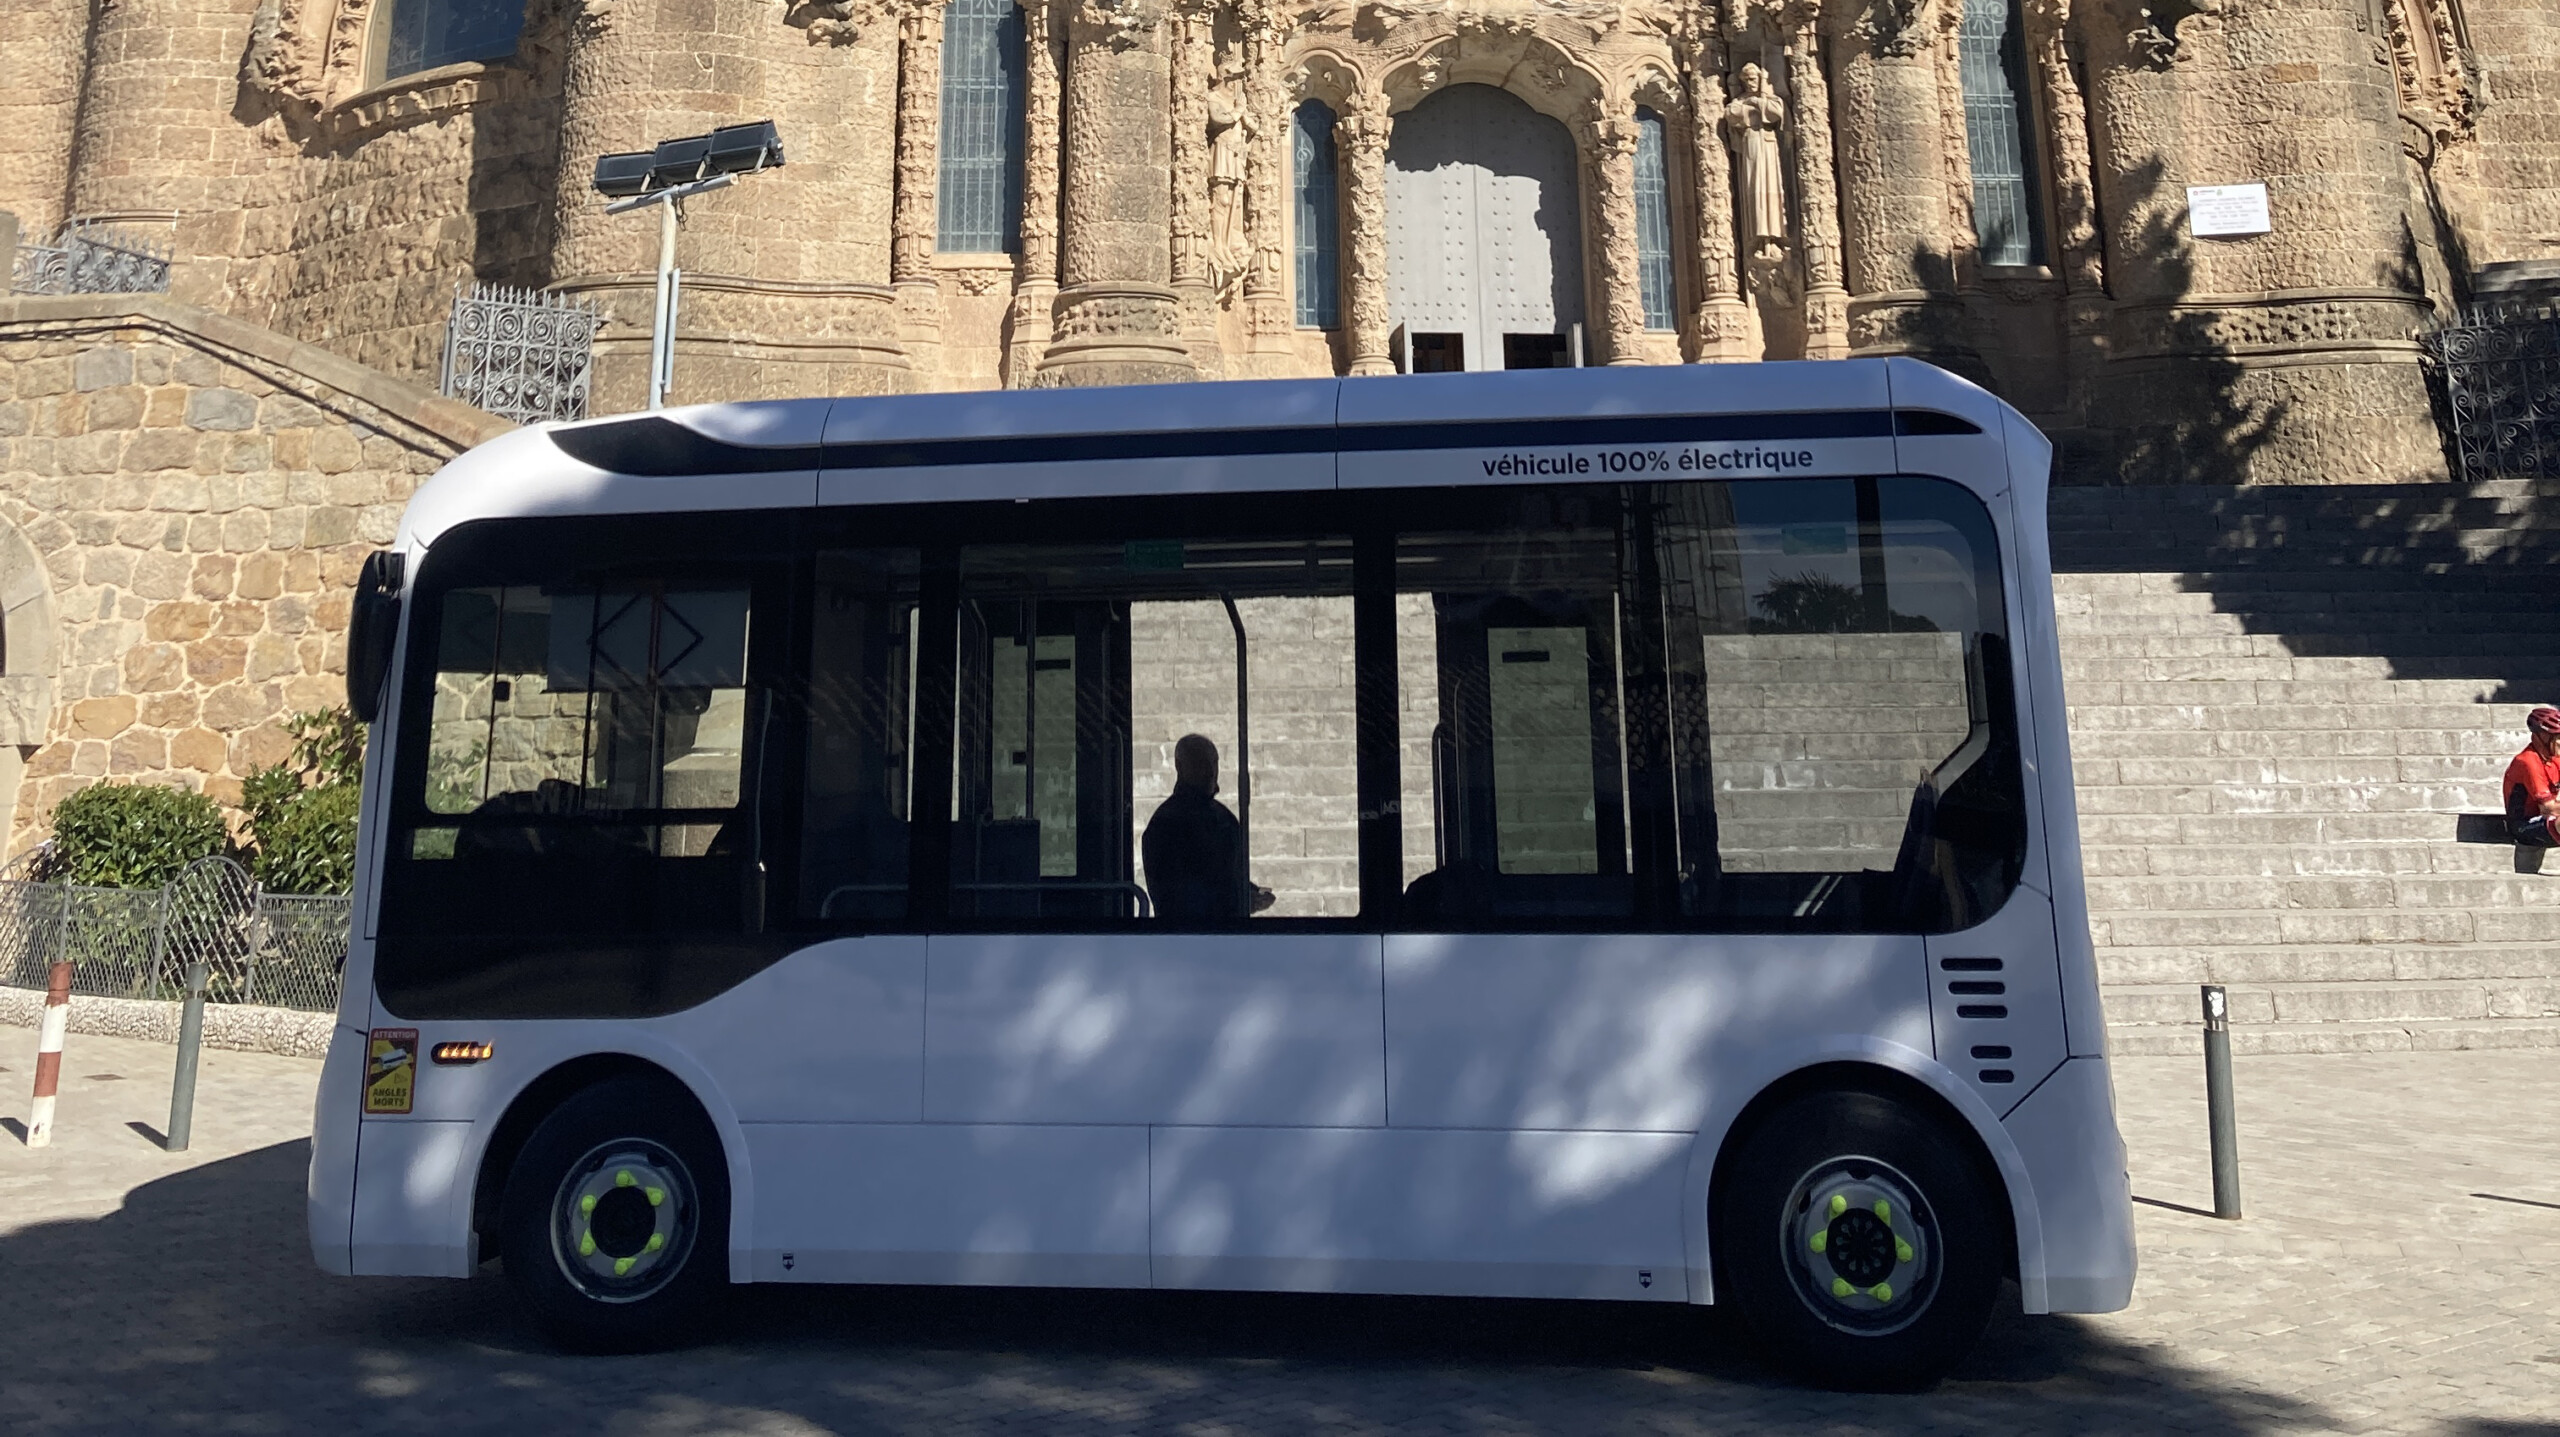 Accordo Bluebus-INDCAR per la distribuzione di minibus elettrici in Spagna e Italia